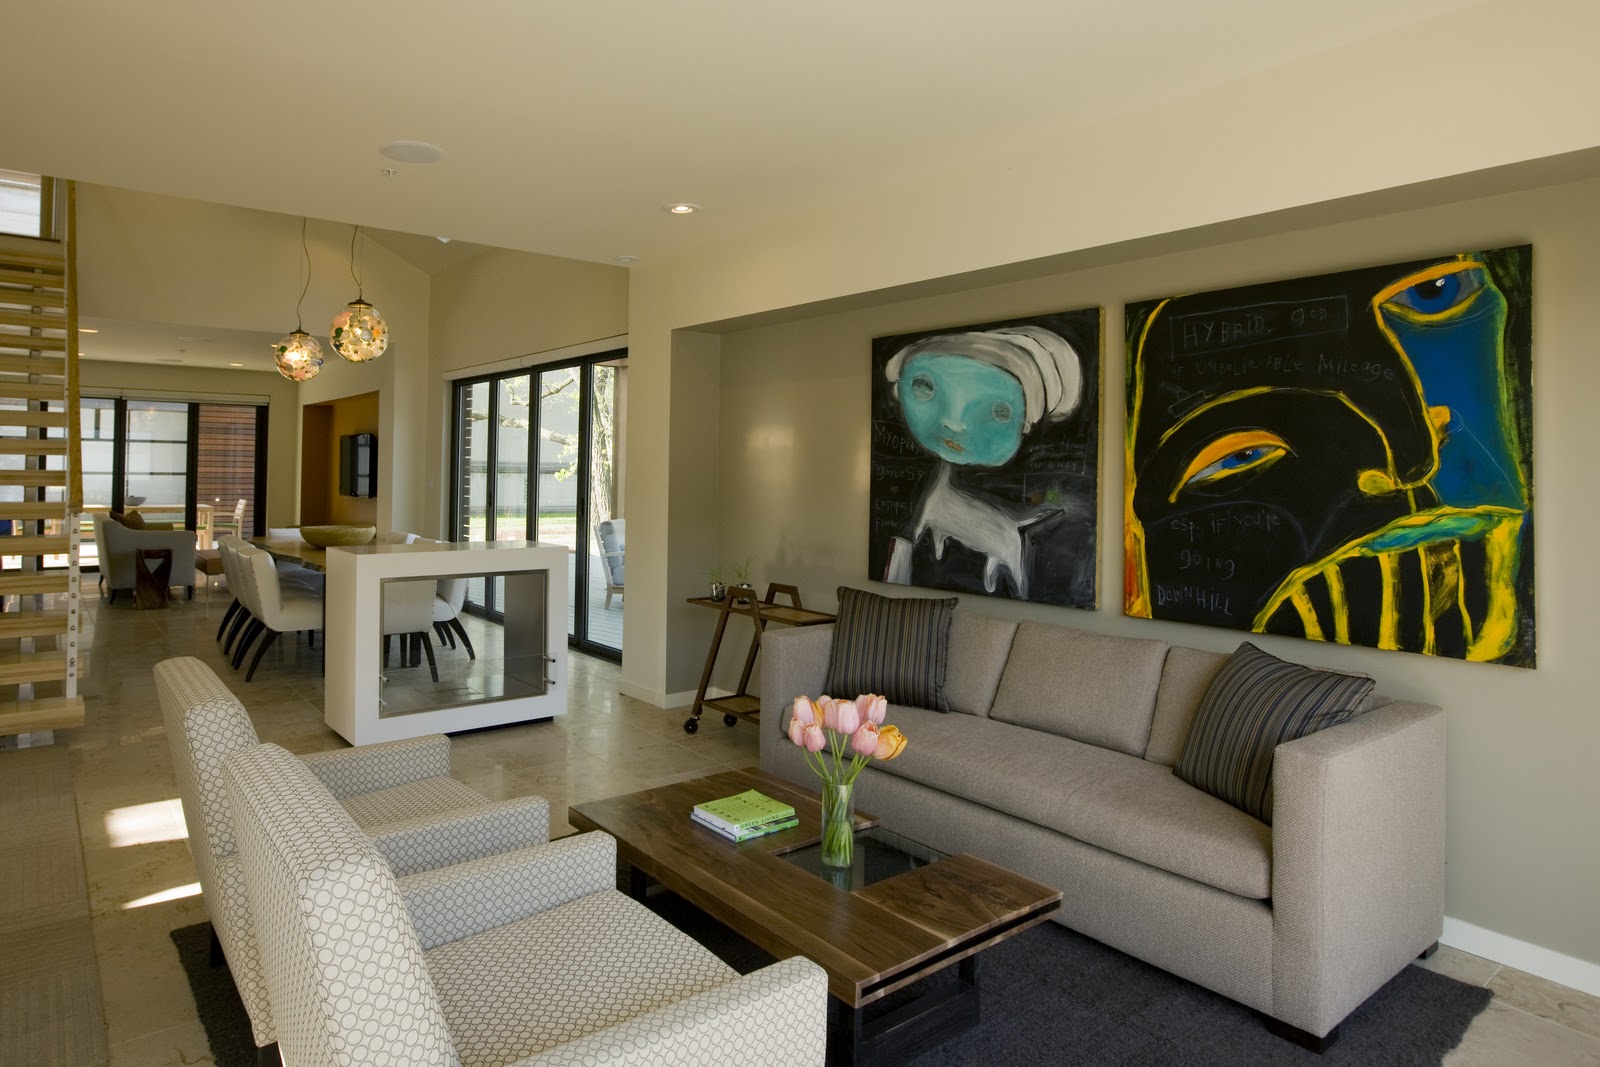 interior-design-ideas-for-living-room-15